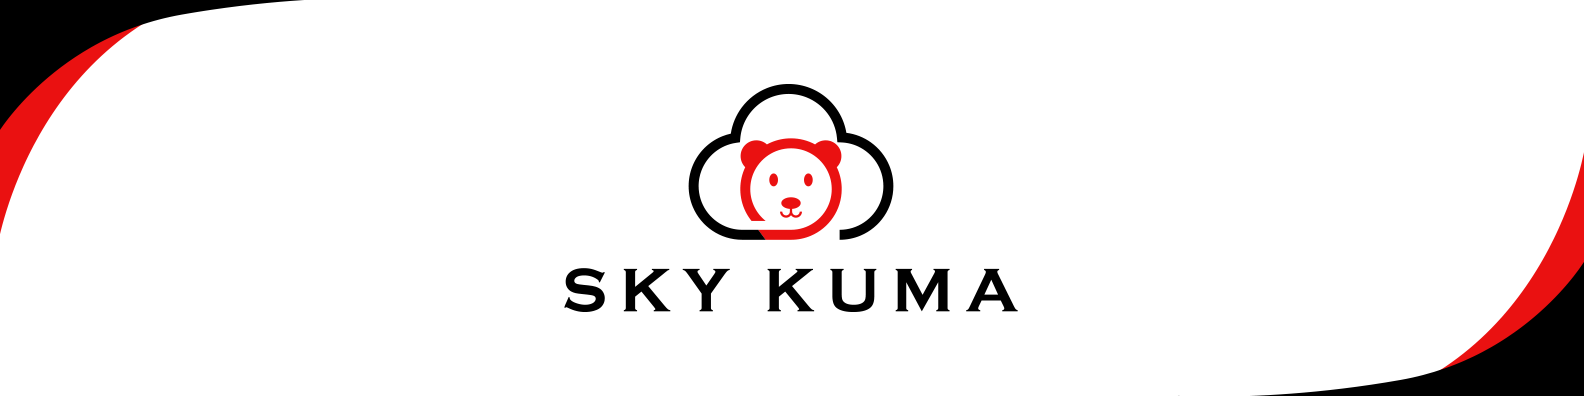 Sky Kuma / startup von Ramstein-Miesenbach / Background